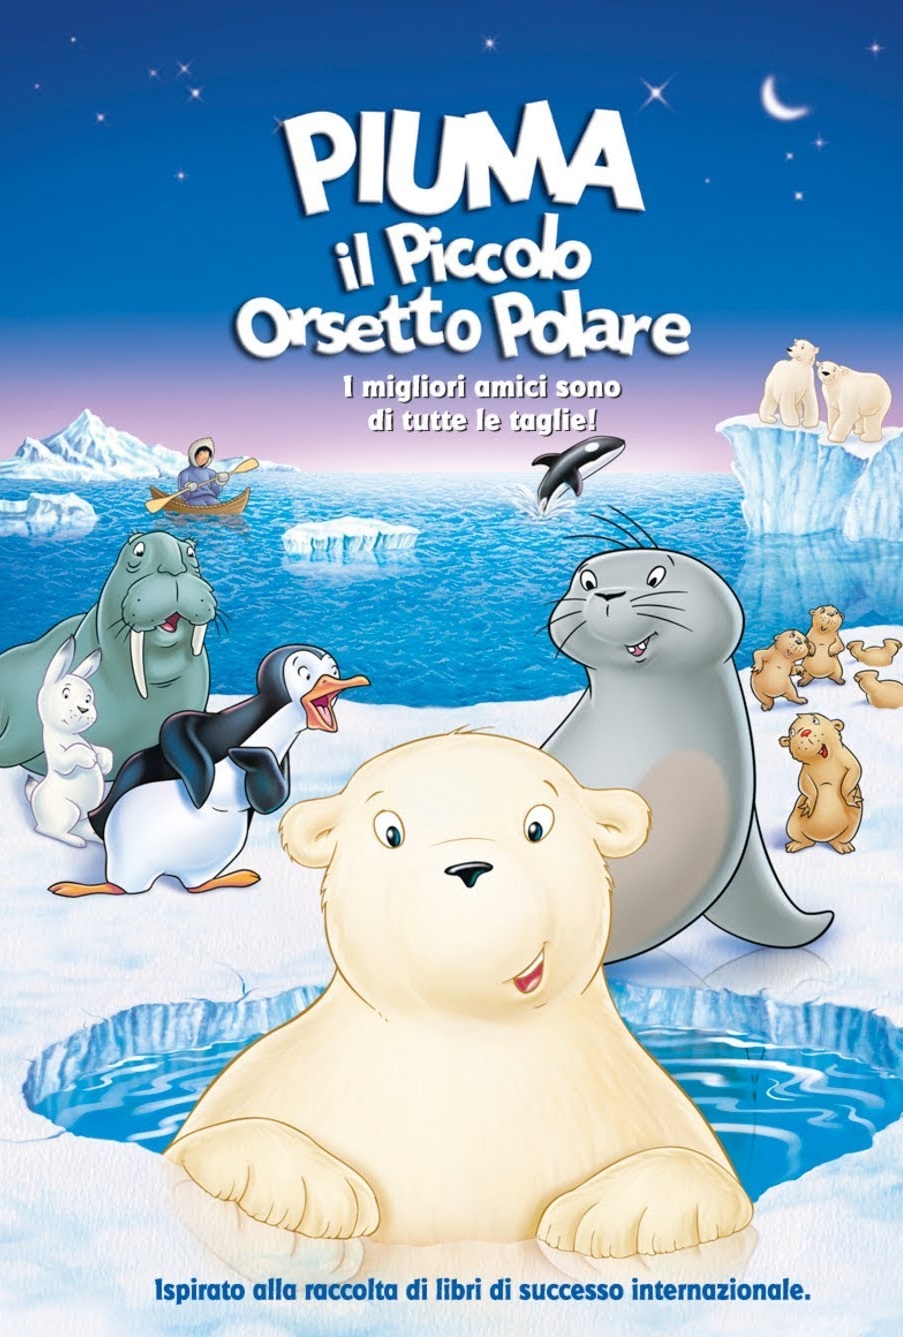 Piuma – Il piccolo orsetto polare (2001)